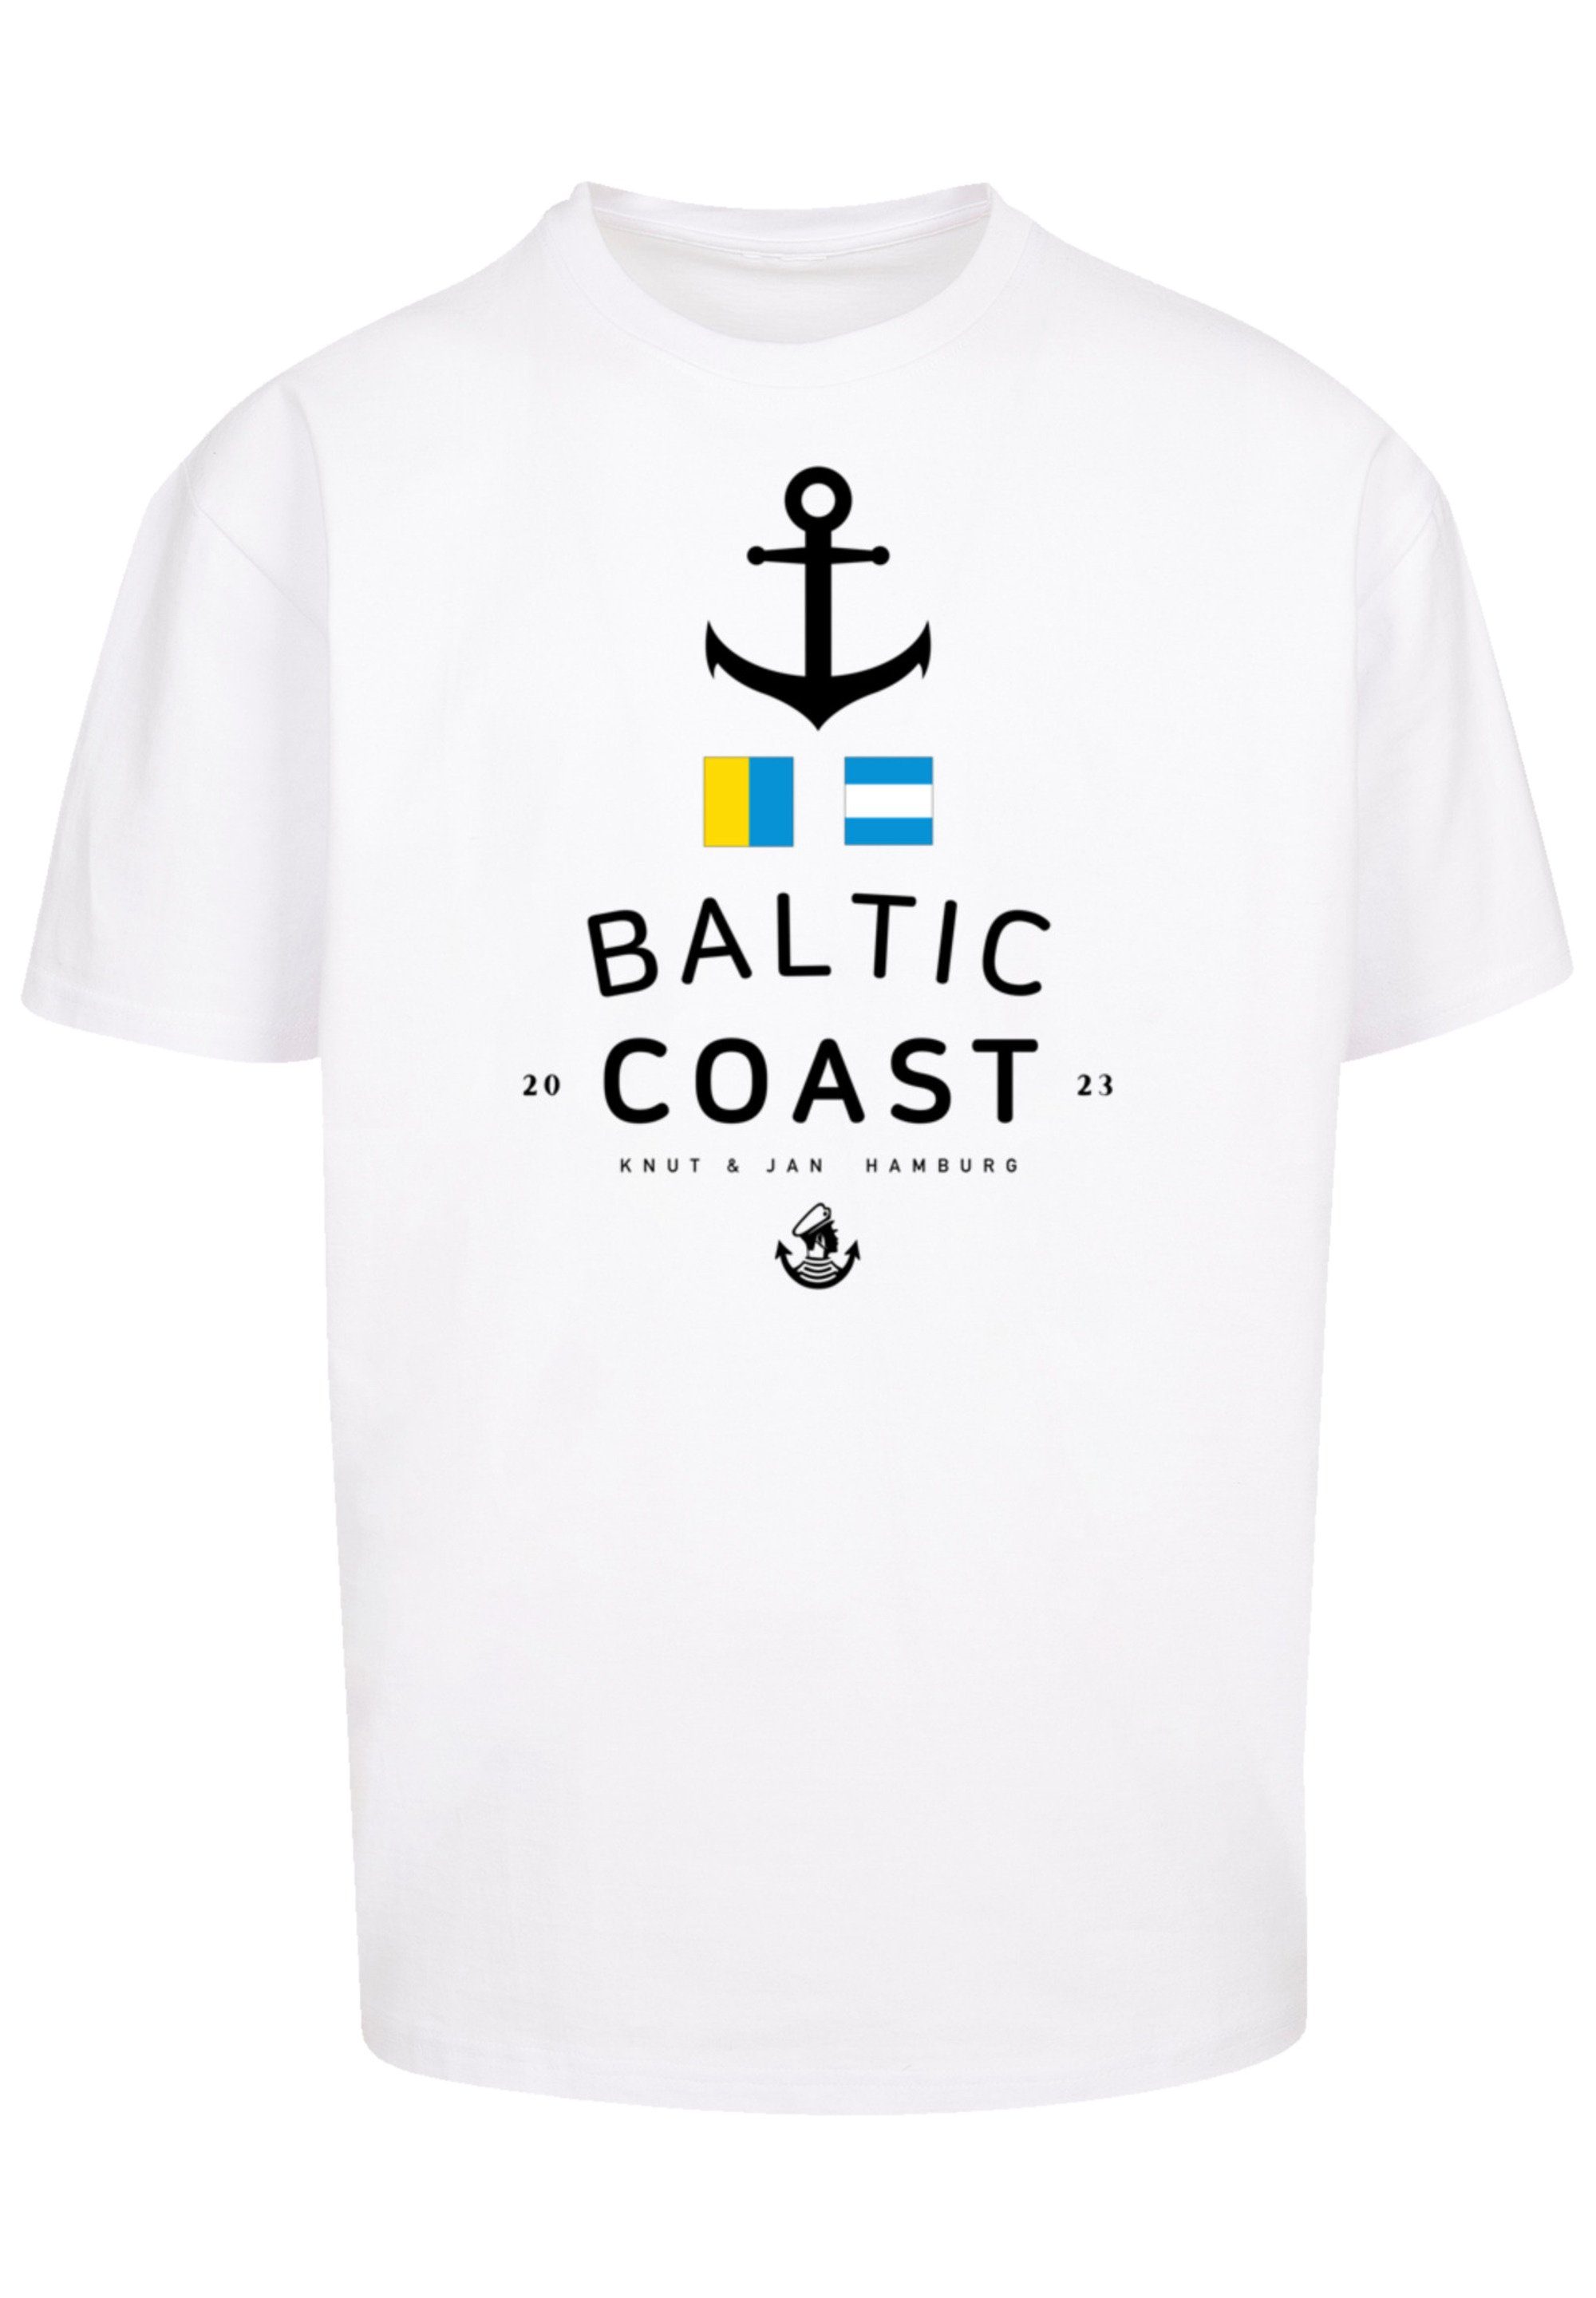 Sea Hamburg Print F4NT4STIC Jan Ostsee Baltic Knut & T-Shirt